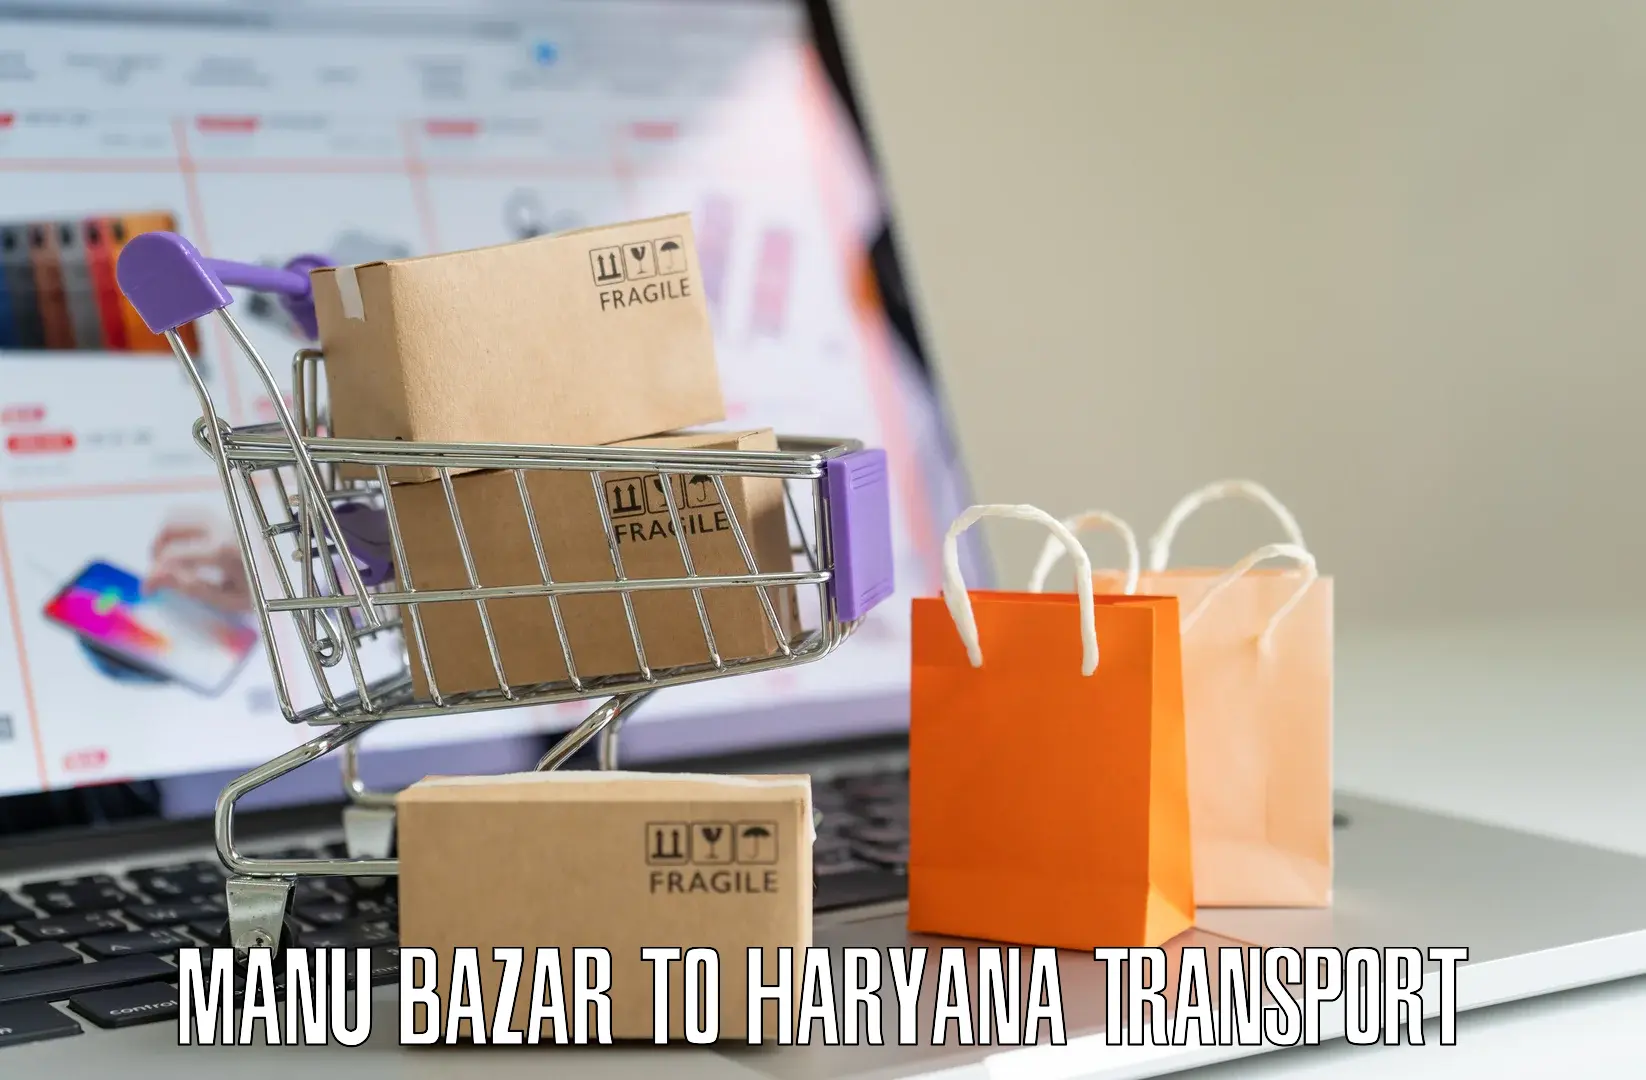 Road transport online services in Manu Bazar to Buguda